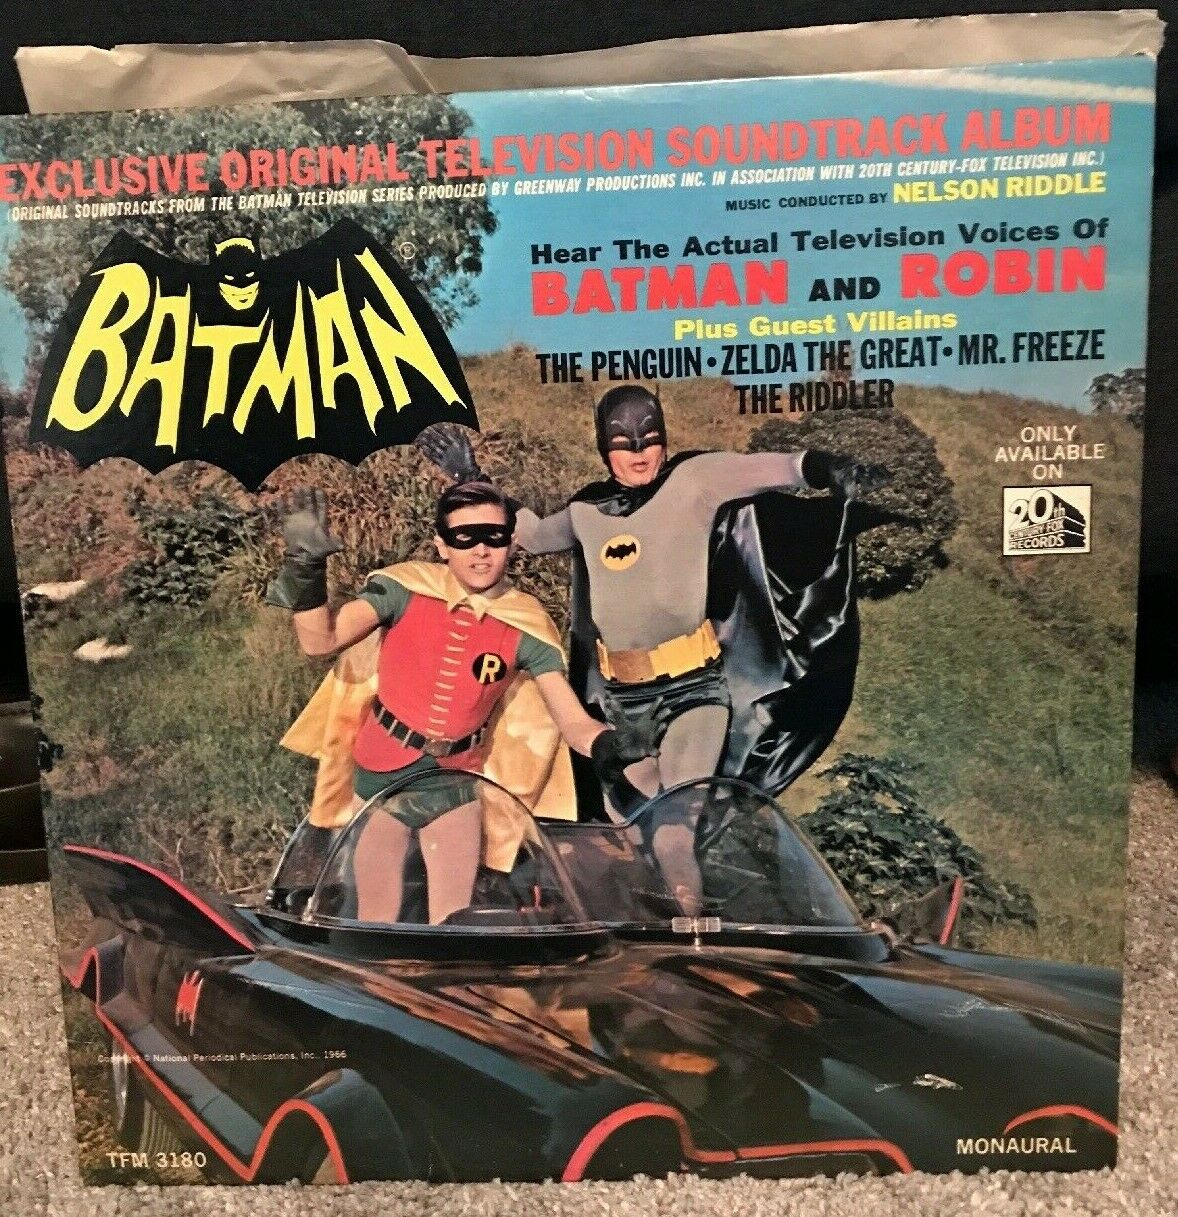 Pic 1 Vintage Batman Robin Television Soundtrack Album Vinyl LP MONO TFM 3180 1966